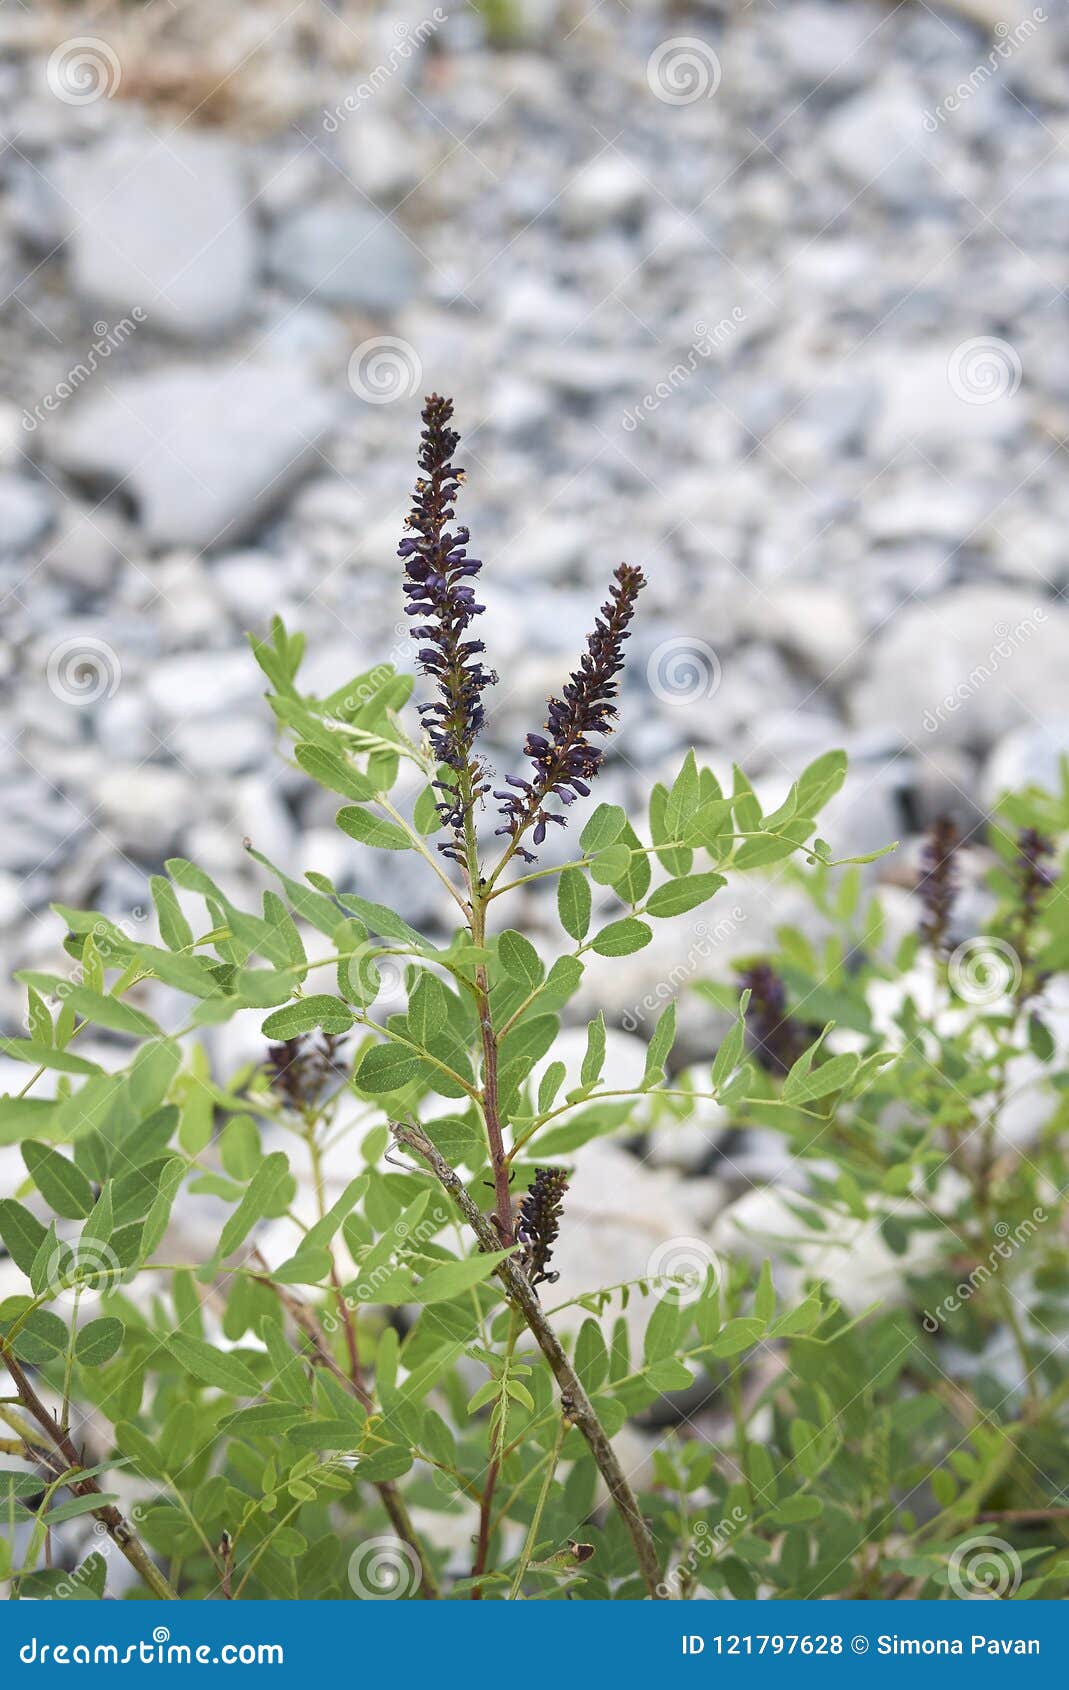 close up amorpha fruticosa plant